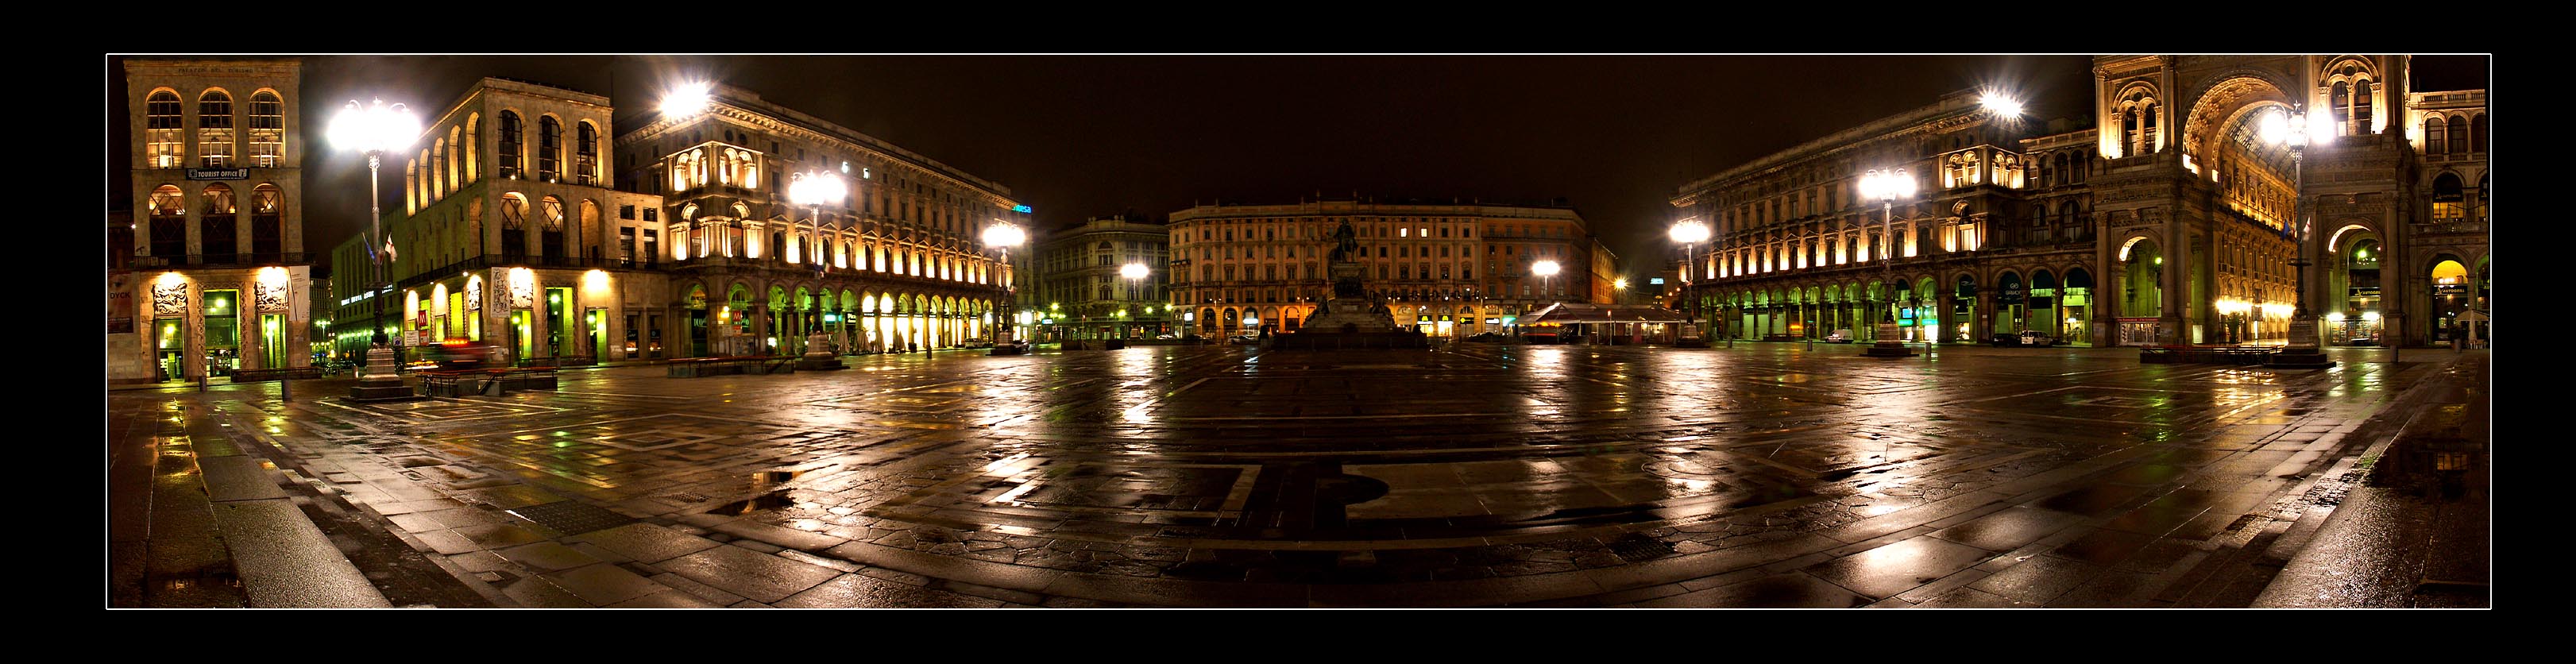 Piazza Duomo - laltro lato